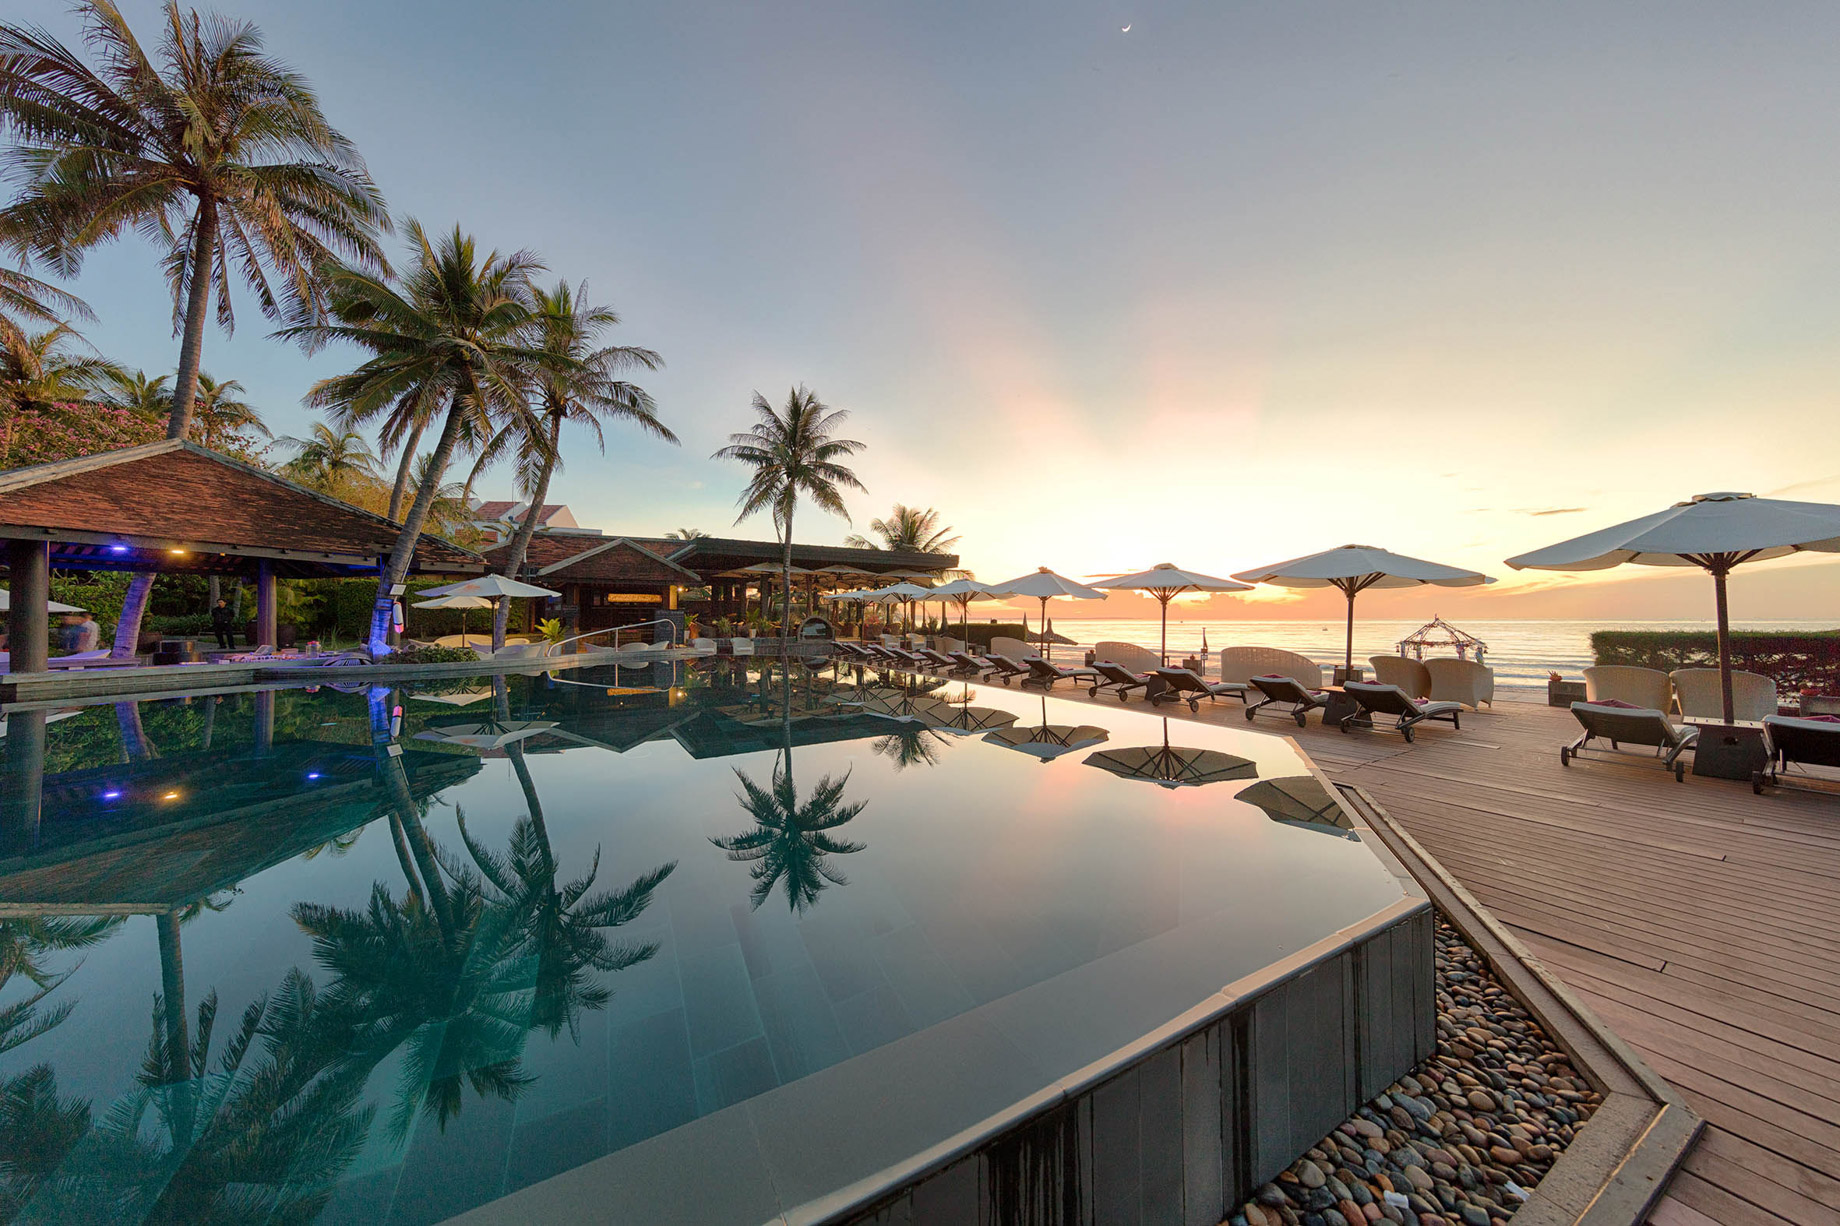 Anantara Mui Ne Resort – Phan Thiet, Vietnam – Pool View Sunset